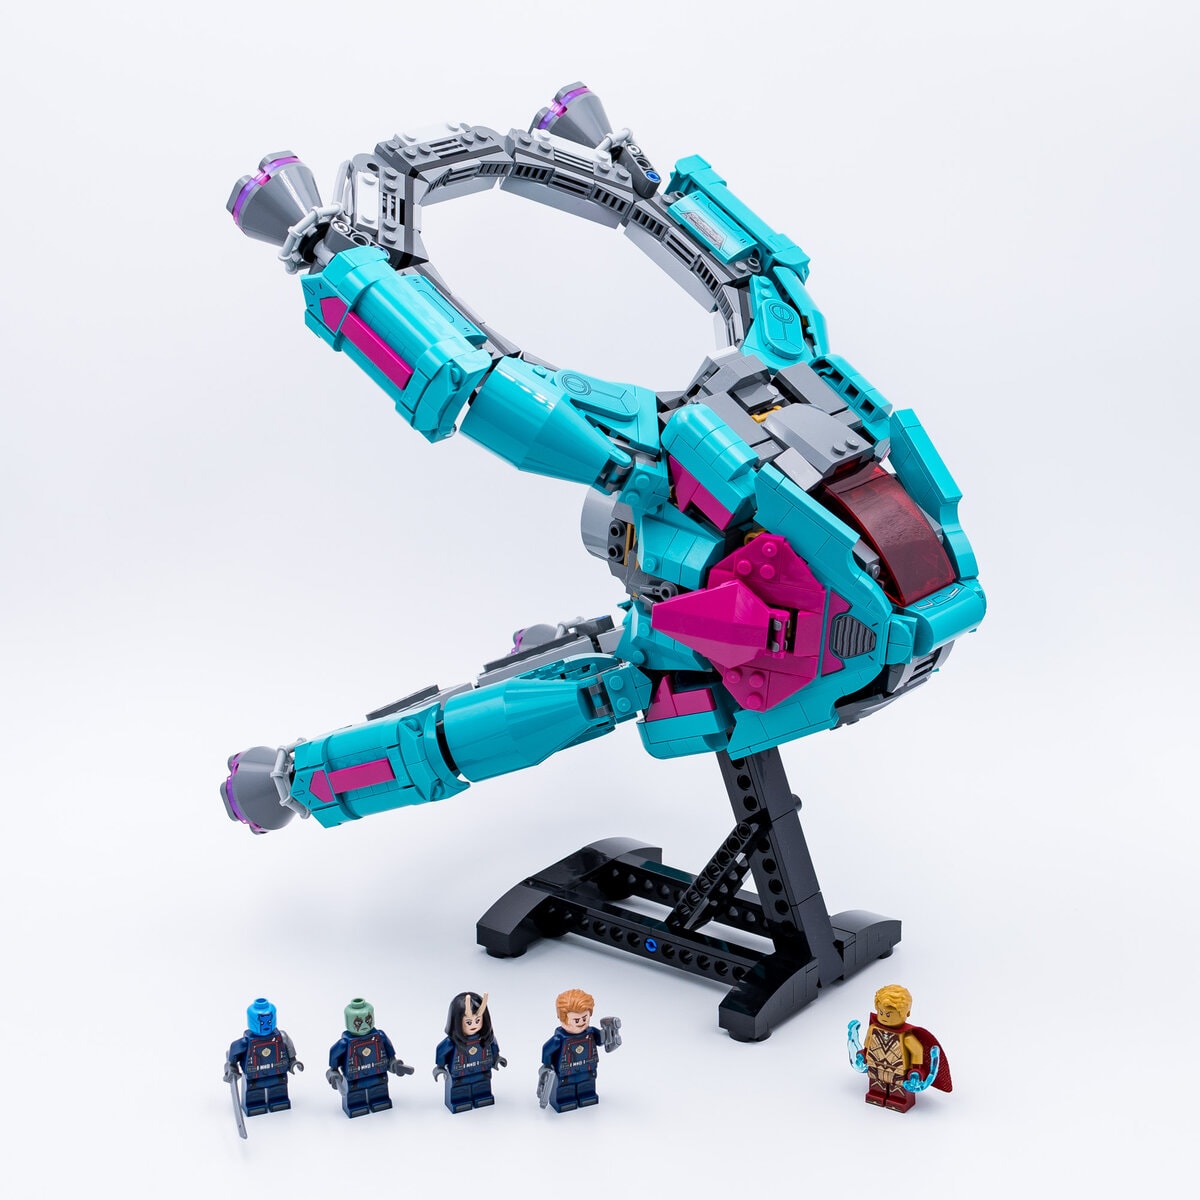 LEGO 76193 Marvel Le Vaisseau des Gardiens de la Galaxie – Jouet